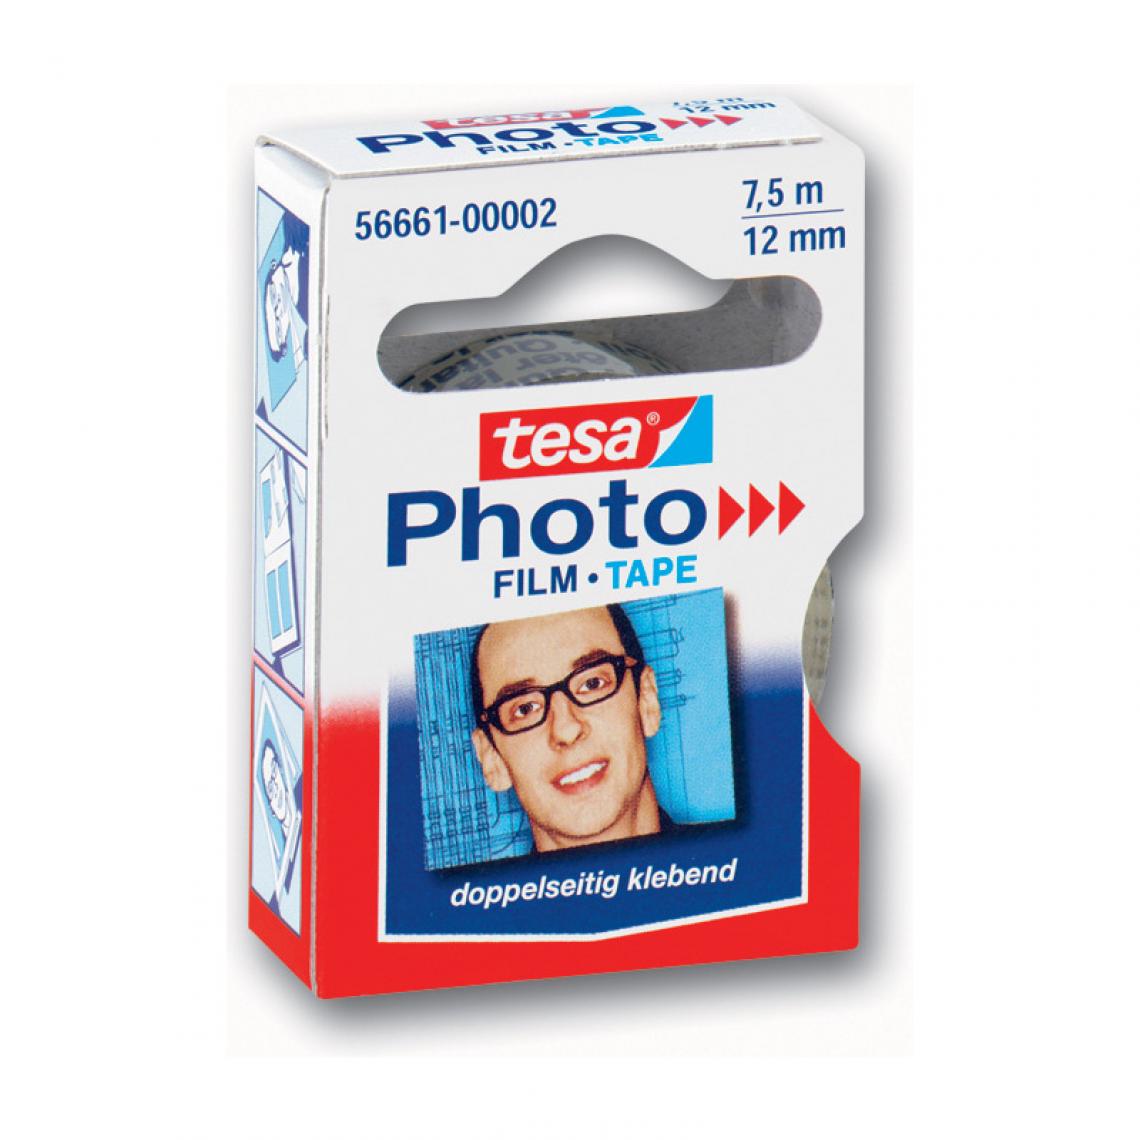 Tesa - tesa Photo Film, 12 mm x 7,5 m, transparent, paquet recharge () - Colles et pistolets à colle